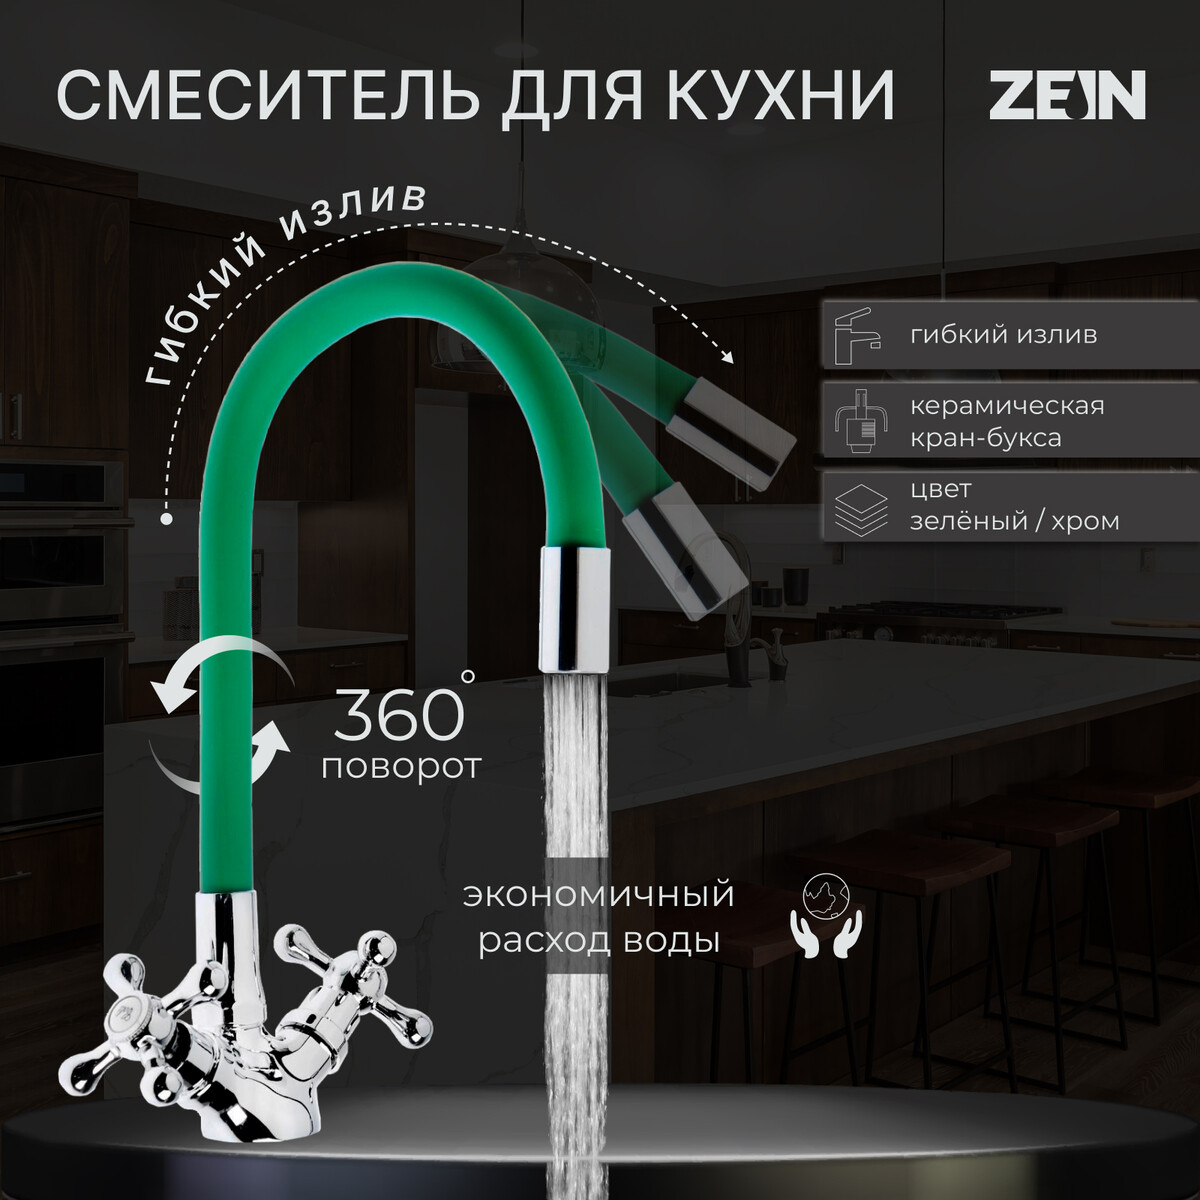 Смеситель для кухни zein z2102, двухвентильный, силиконовый излив, зеленый/хром смеситель для кухни solone с кран буксой для одного типа воды хром jik15 a102 a